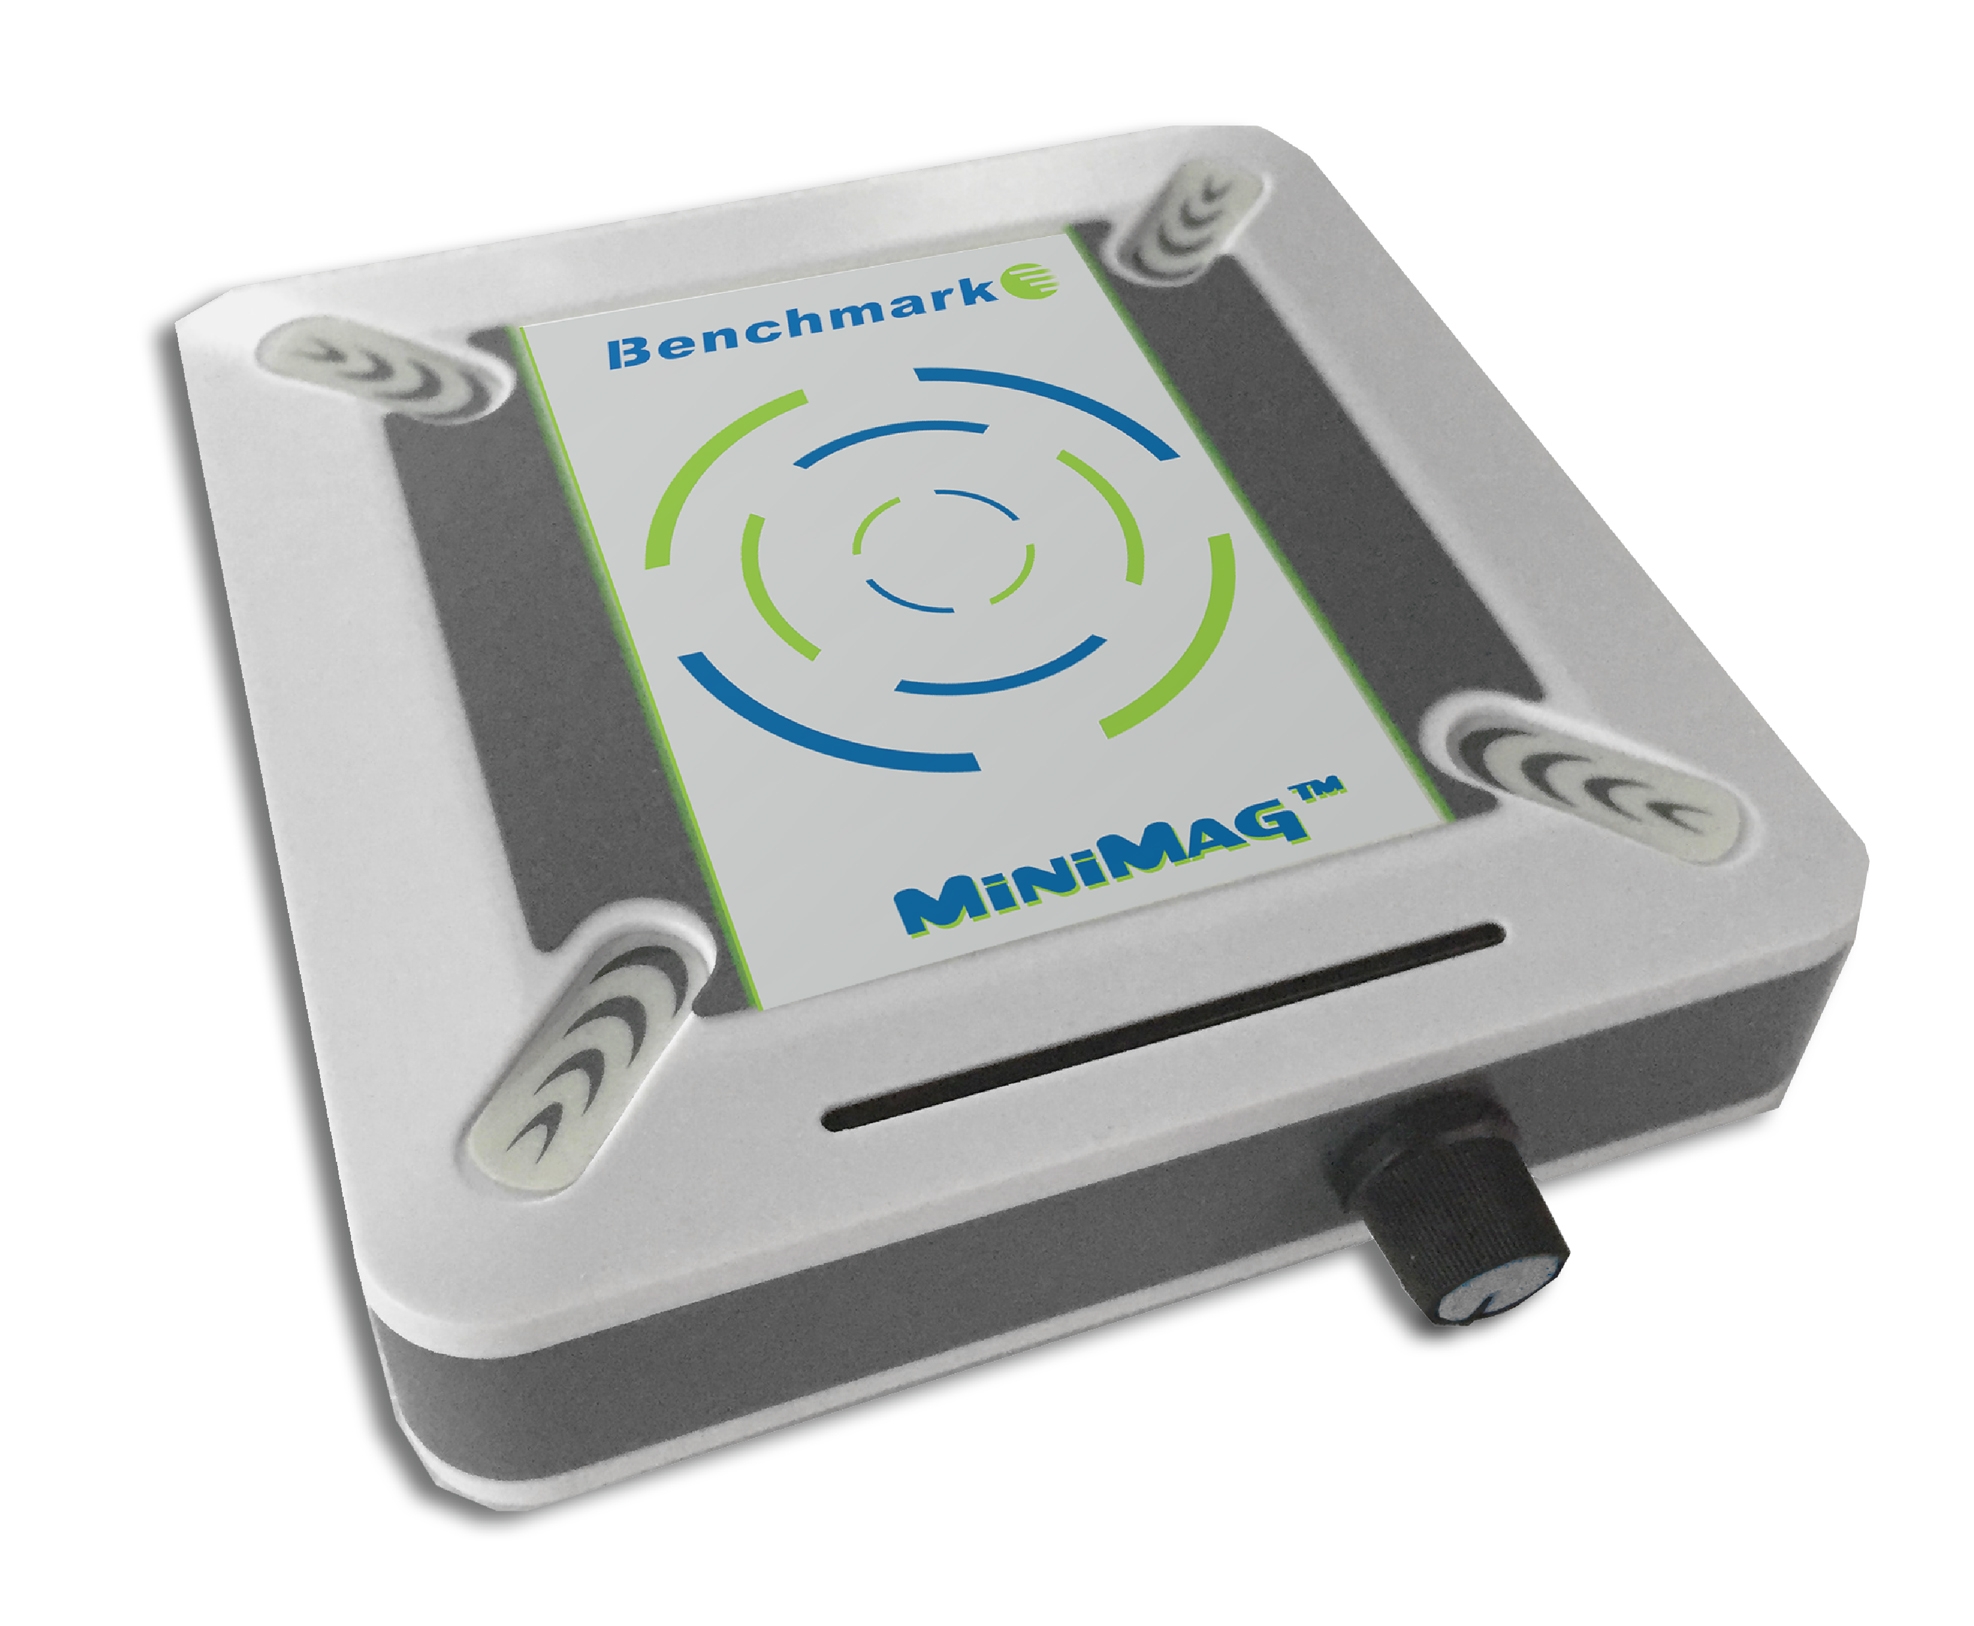 Benchmark Scientific H3710-HS Digital Hotplate Magnetic Stirrer, 10 x 10, 115V